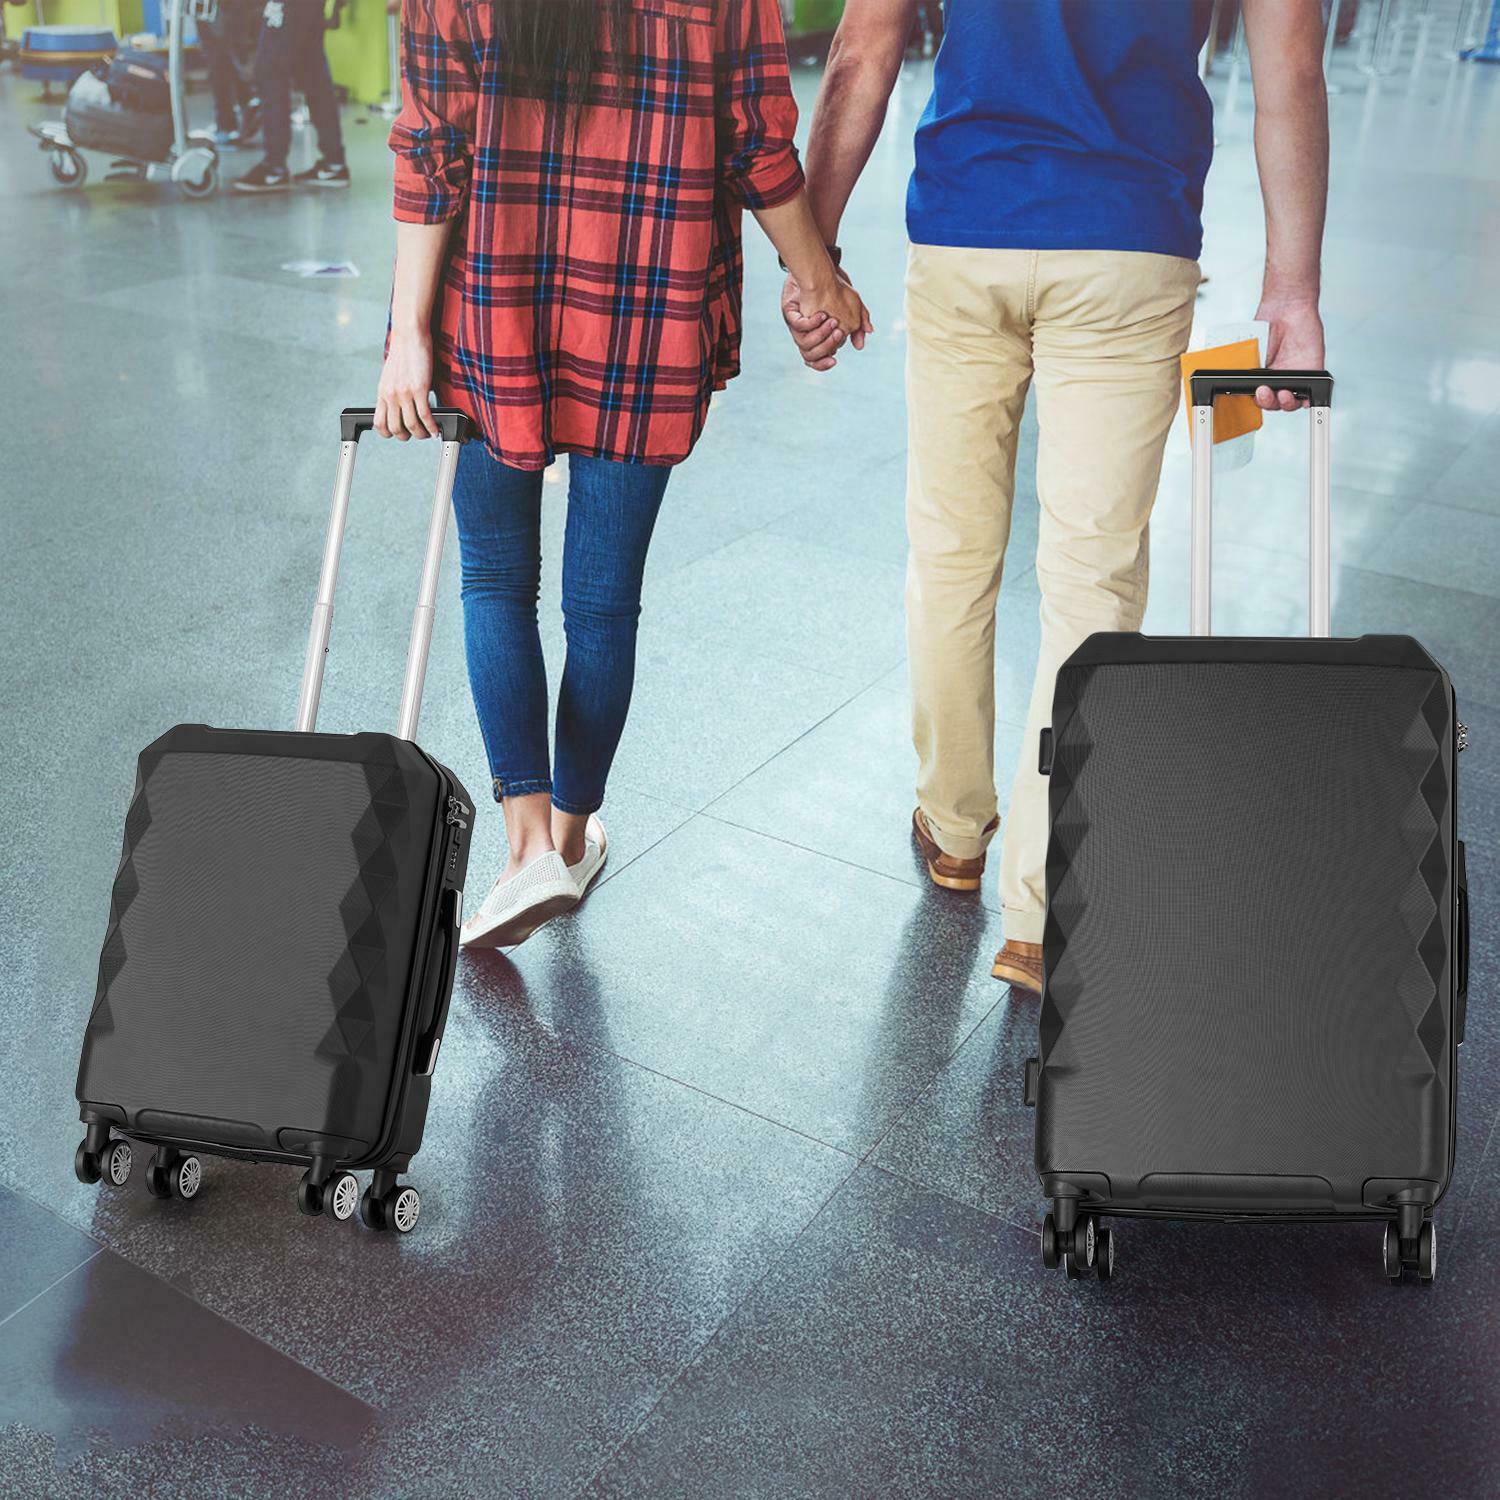 3pcs Luggage Set Hardside Luggage with Spinner Wheels - atozdepot23